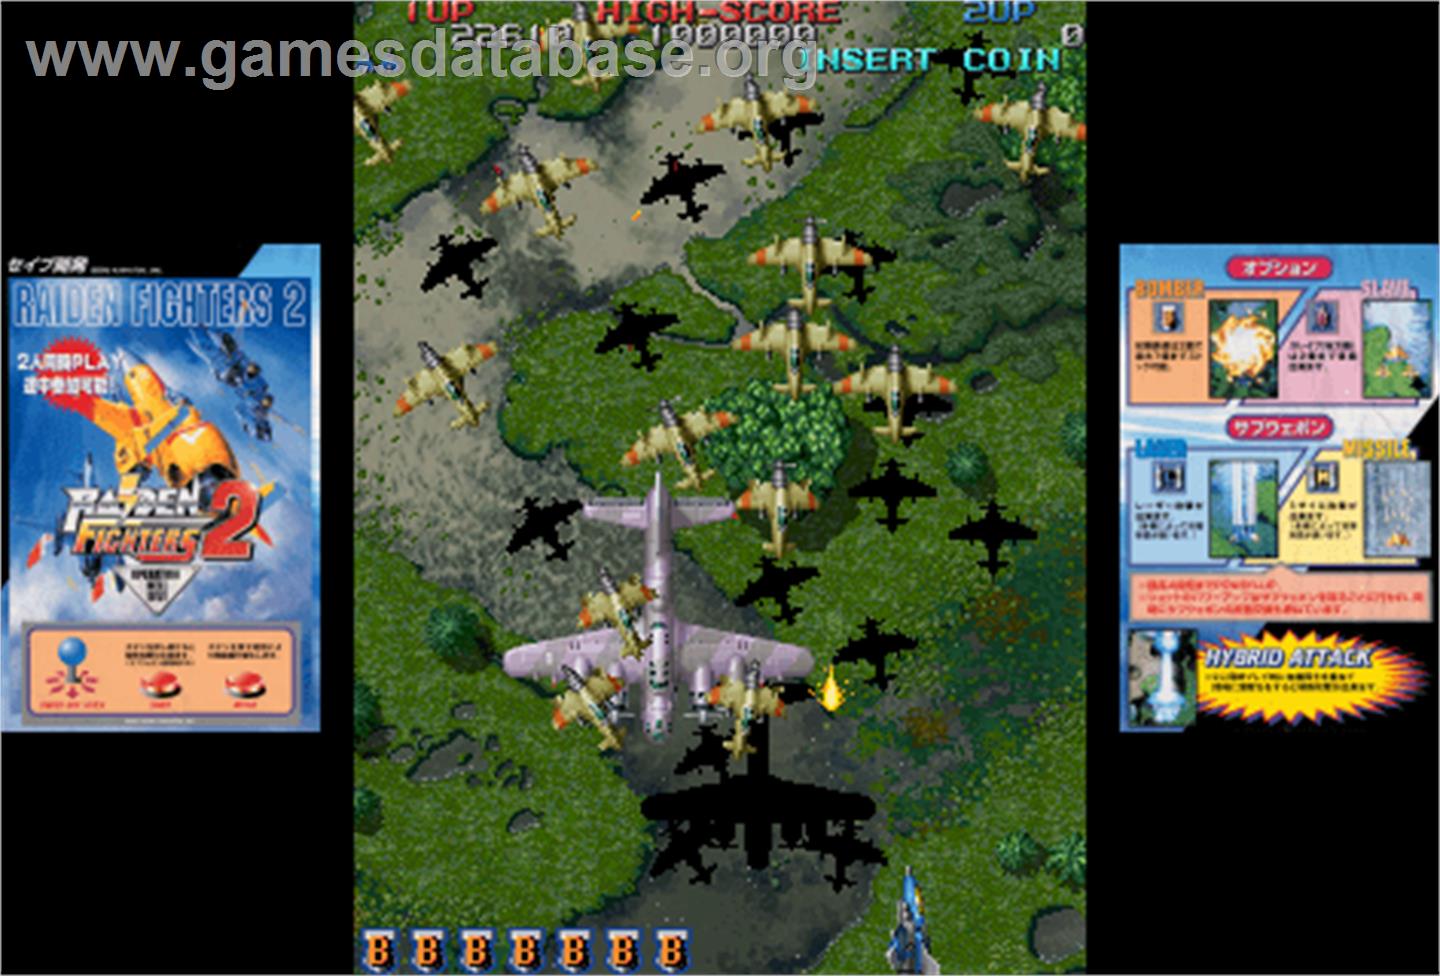 Raiden Fighters 2 - 2000 - Arcade - Artwork - Artwork